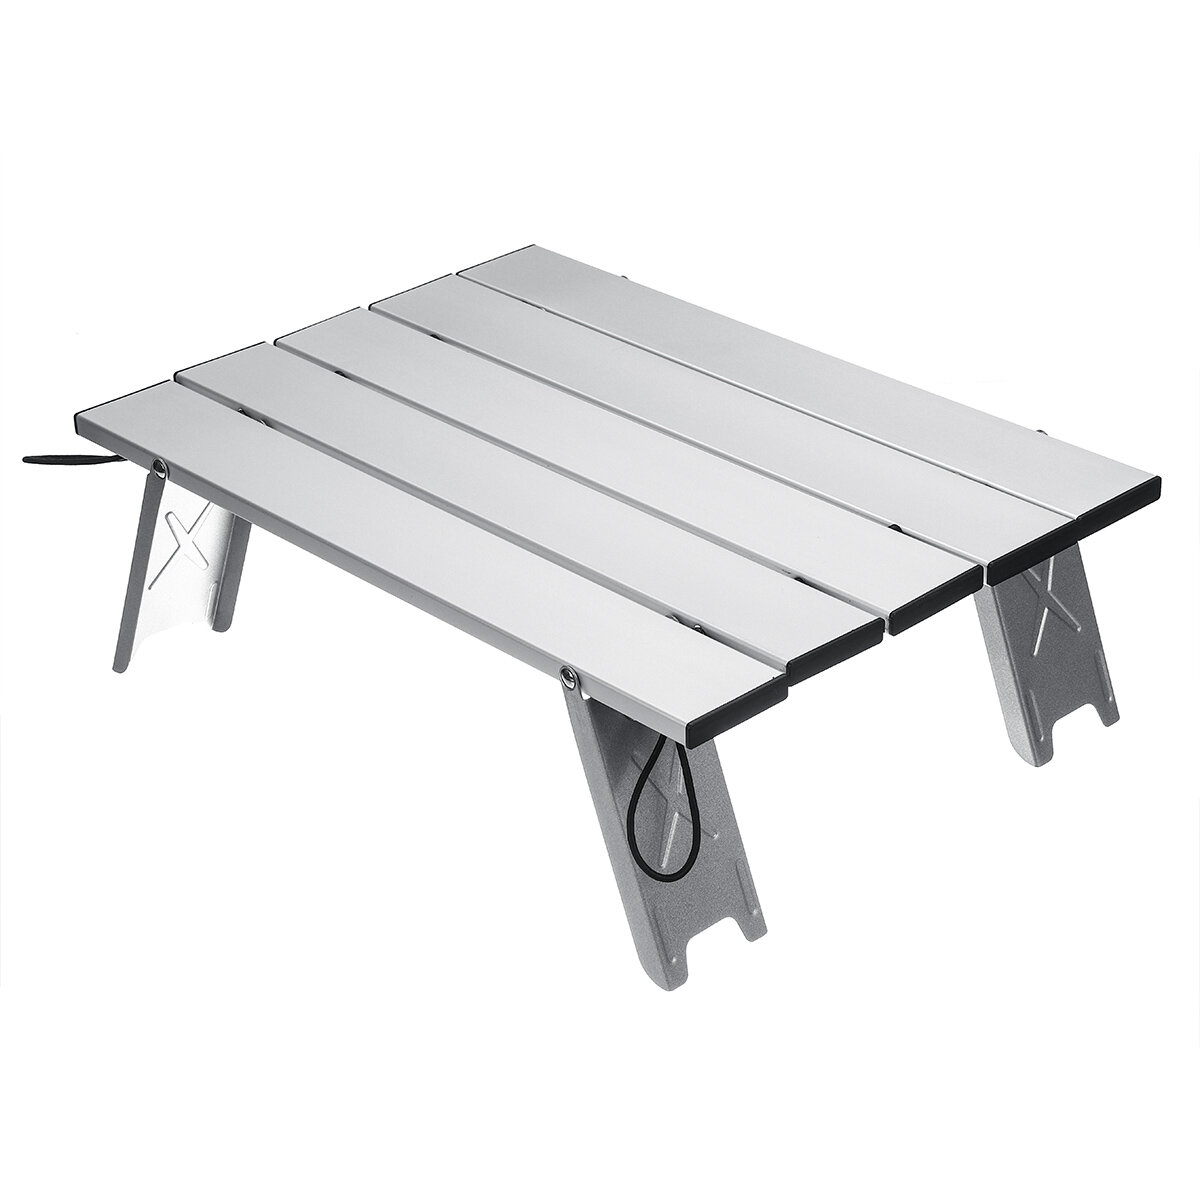 Chaise de Table pliante extérieure portable Camping Table de pique-nique en alliage d'aluminium Table durable ultra-légère étanche 40x29x12cm